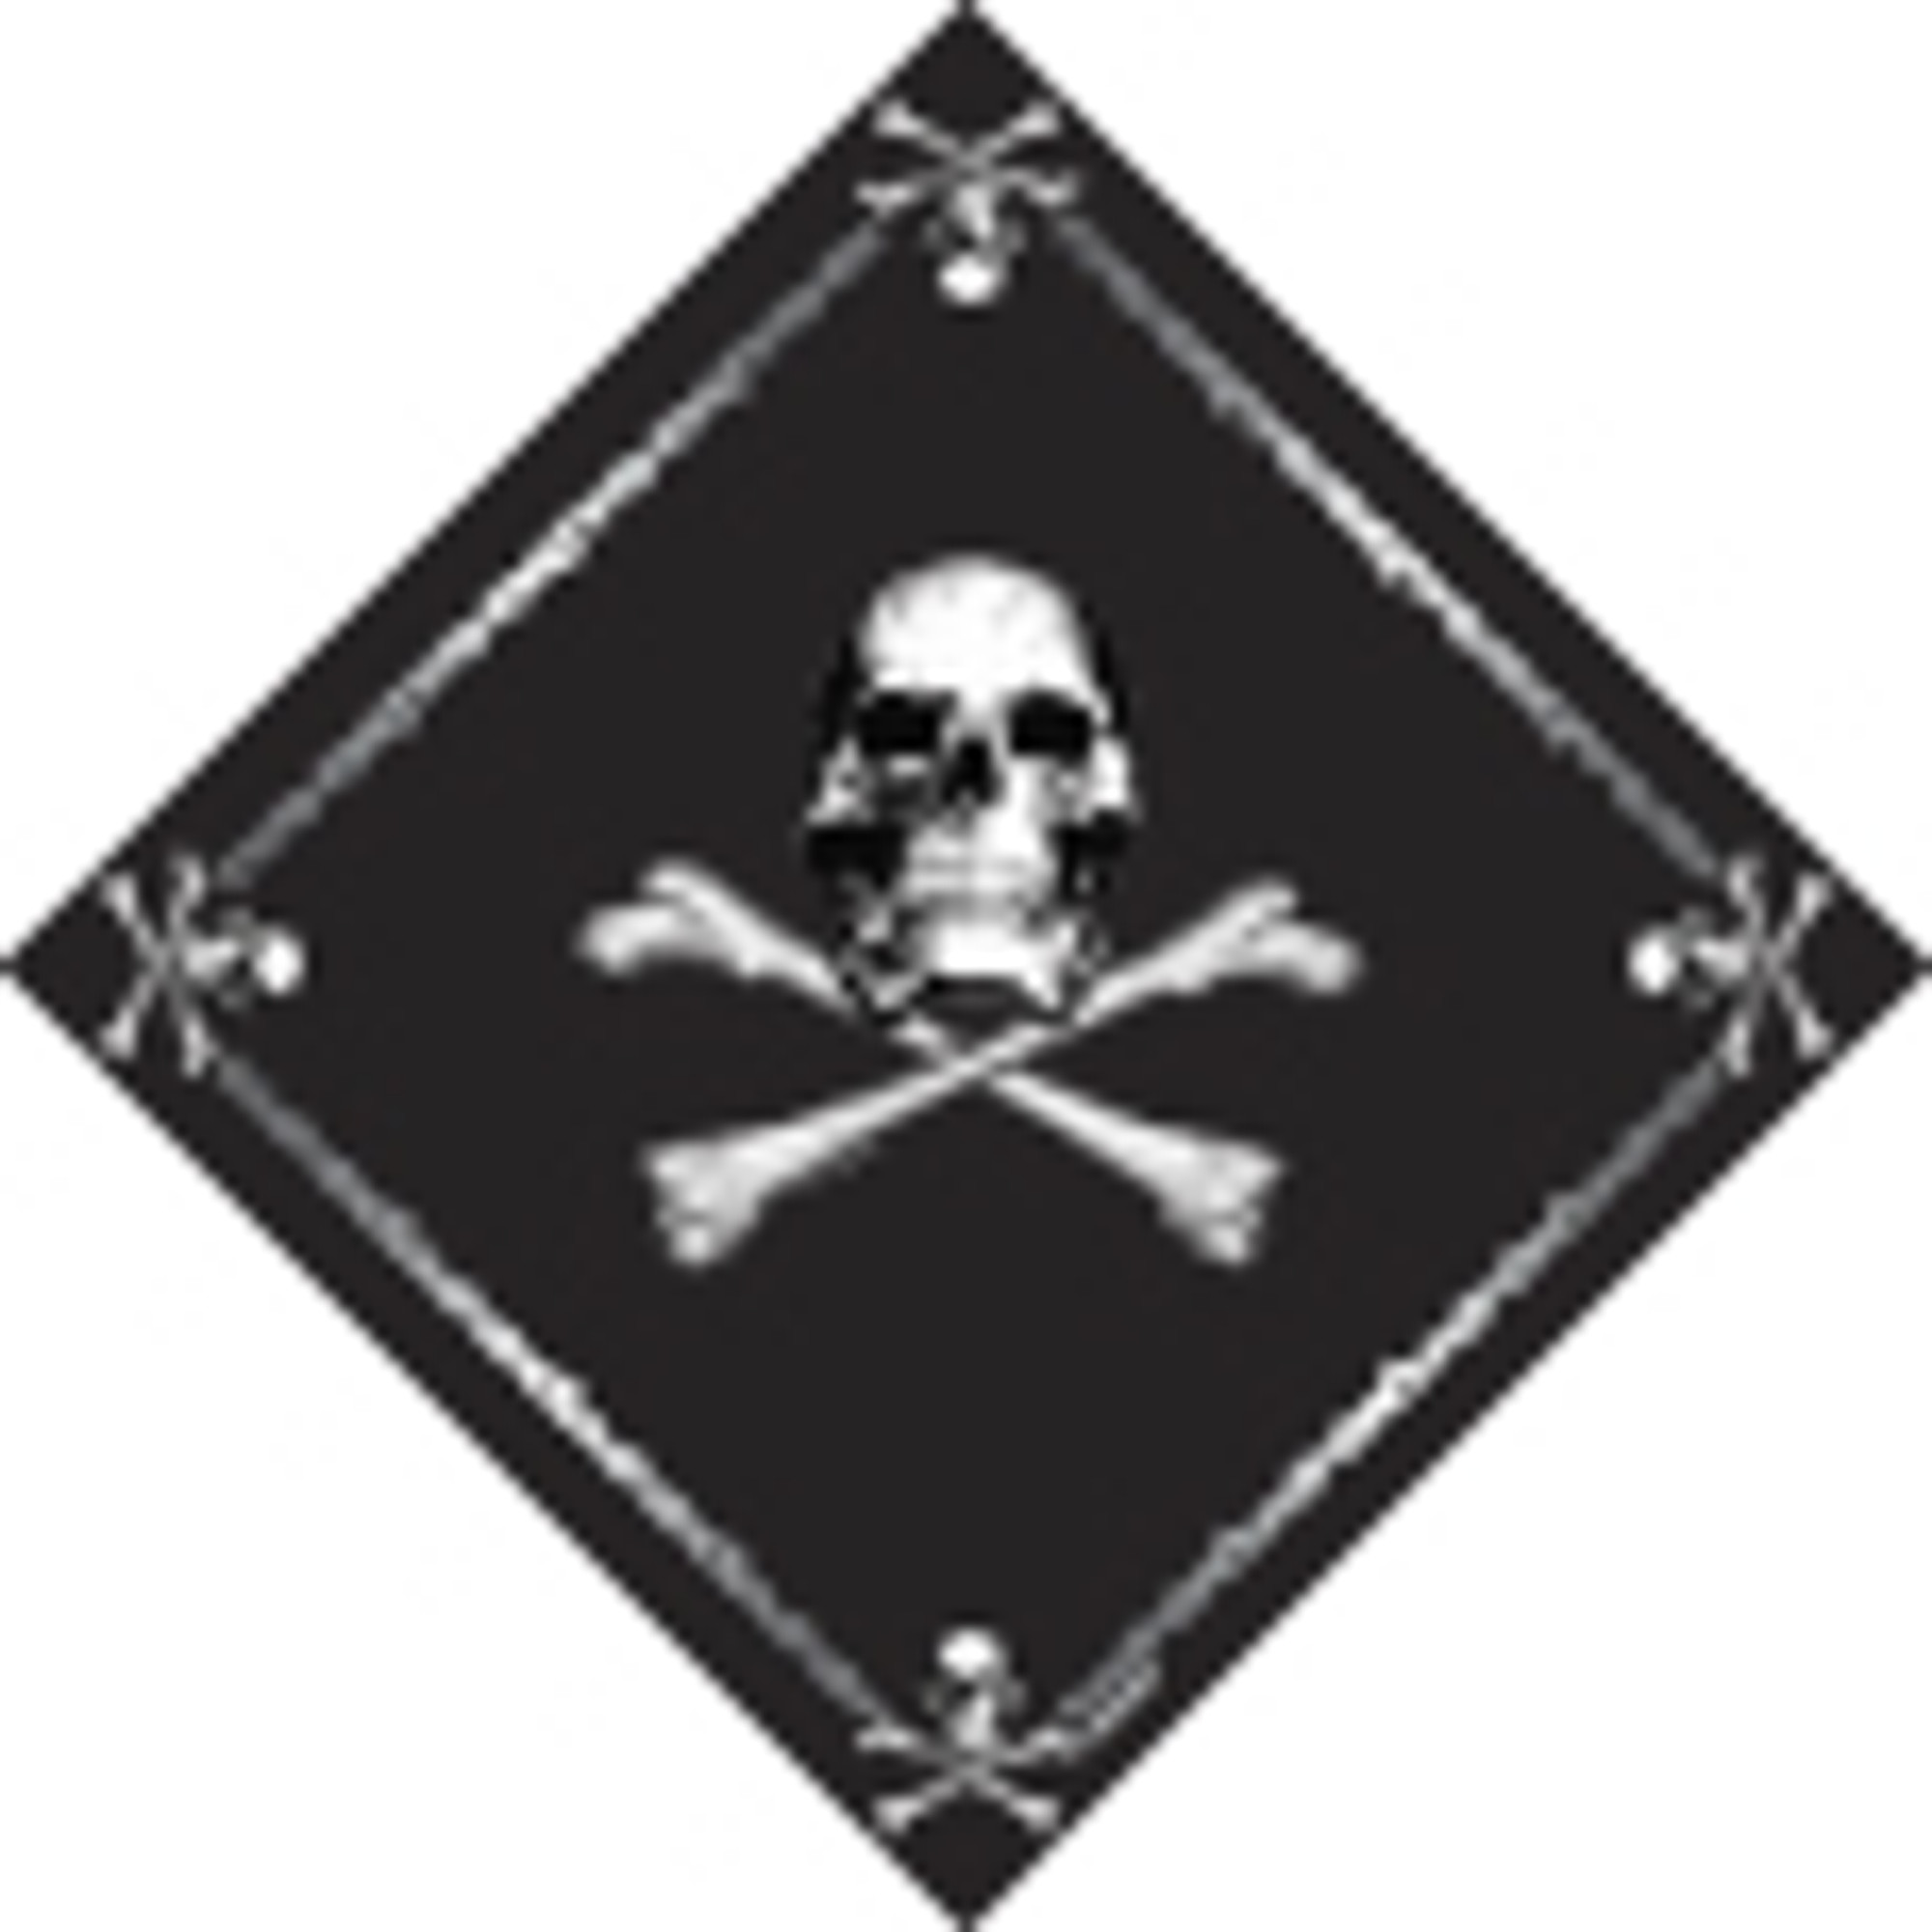 Rothco Skull Jolly Roger Bandana